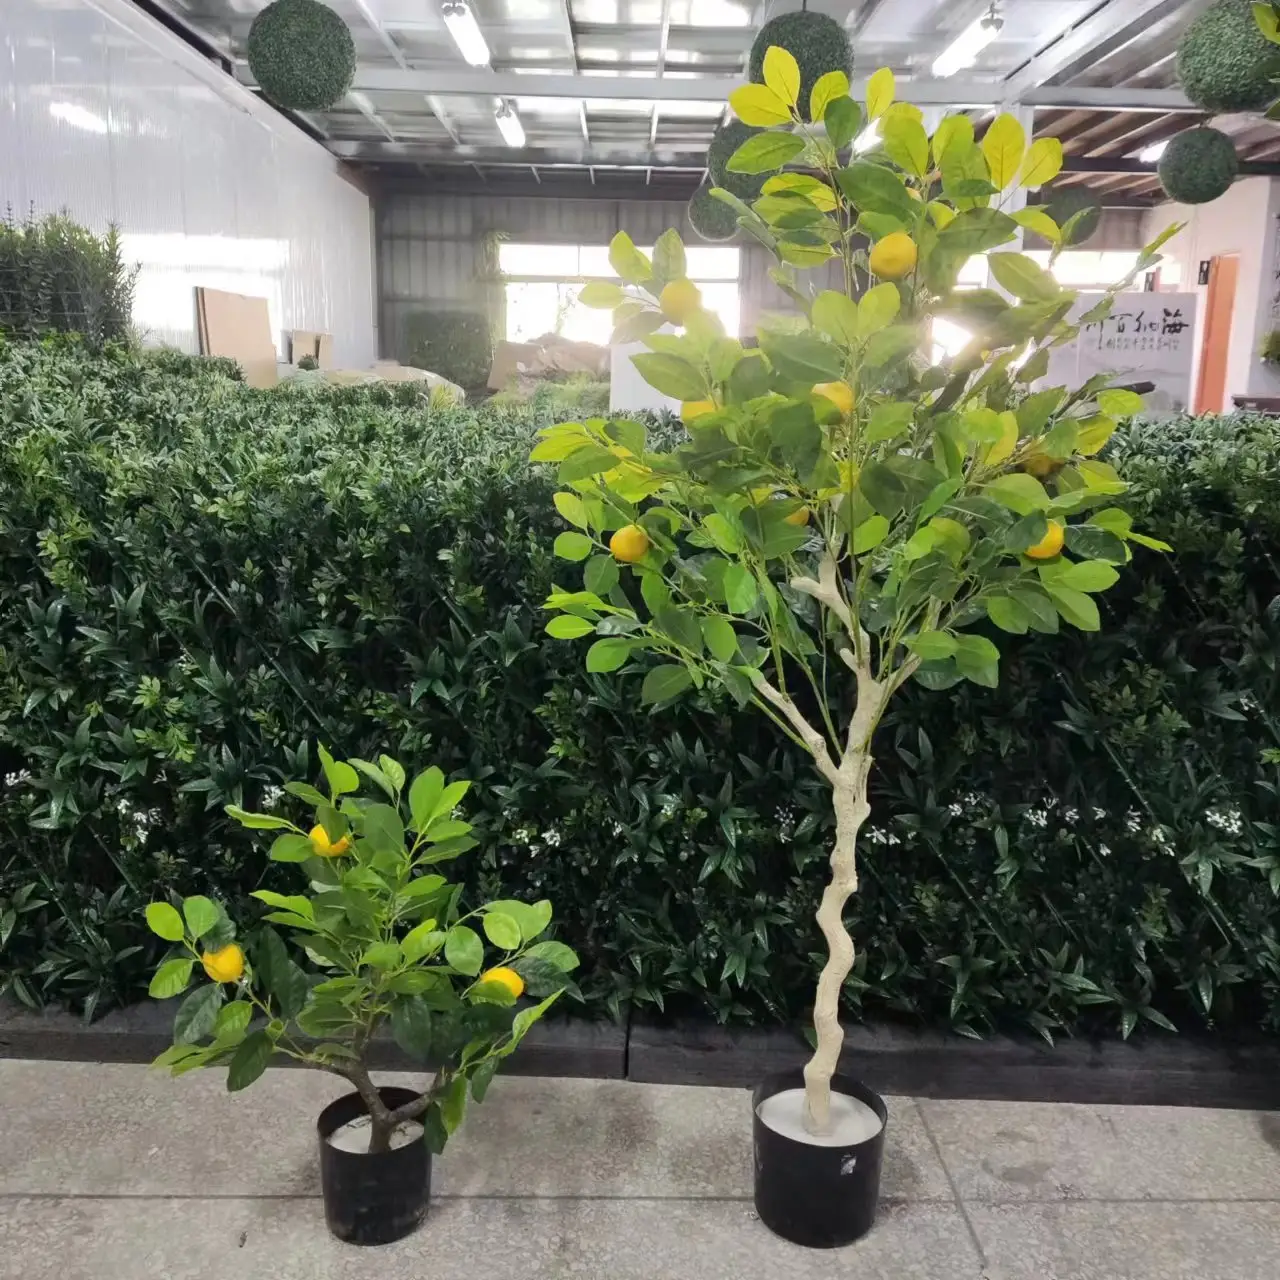 HX-cultivo de plantas artificiales, producto de PE para cultivo de árboles frutales falsos en maceta, fuente de árbol naranja, fabricante en Venta Directa